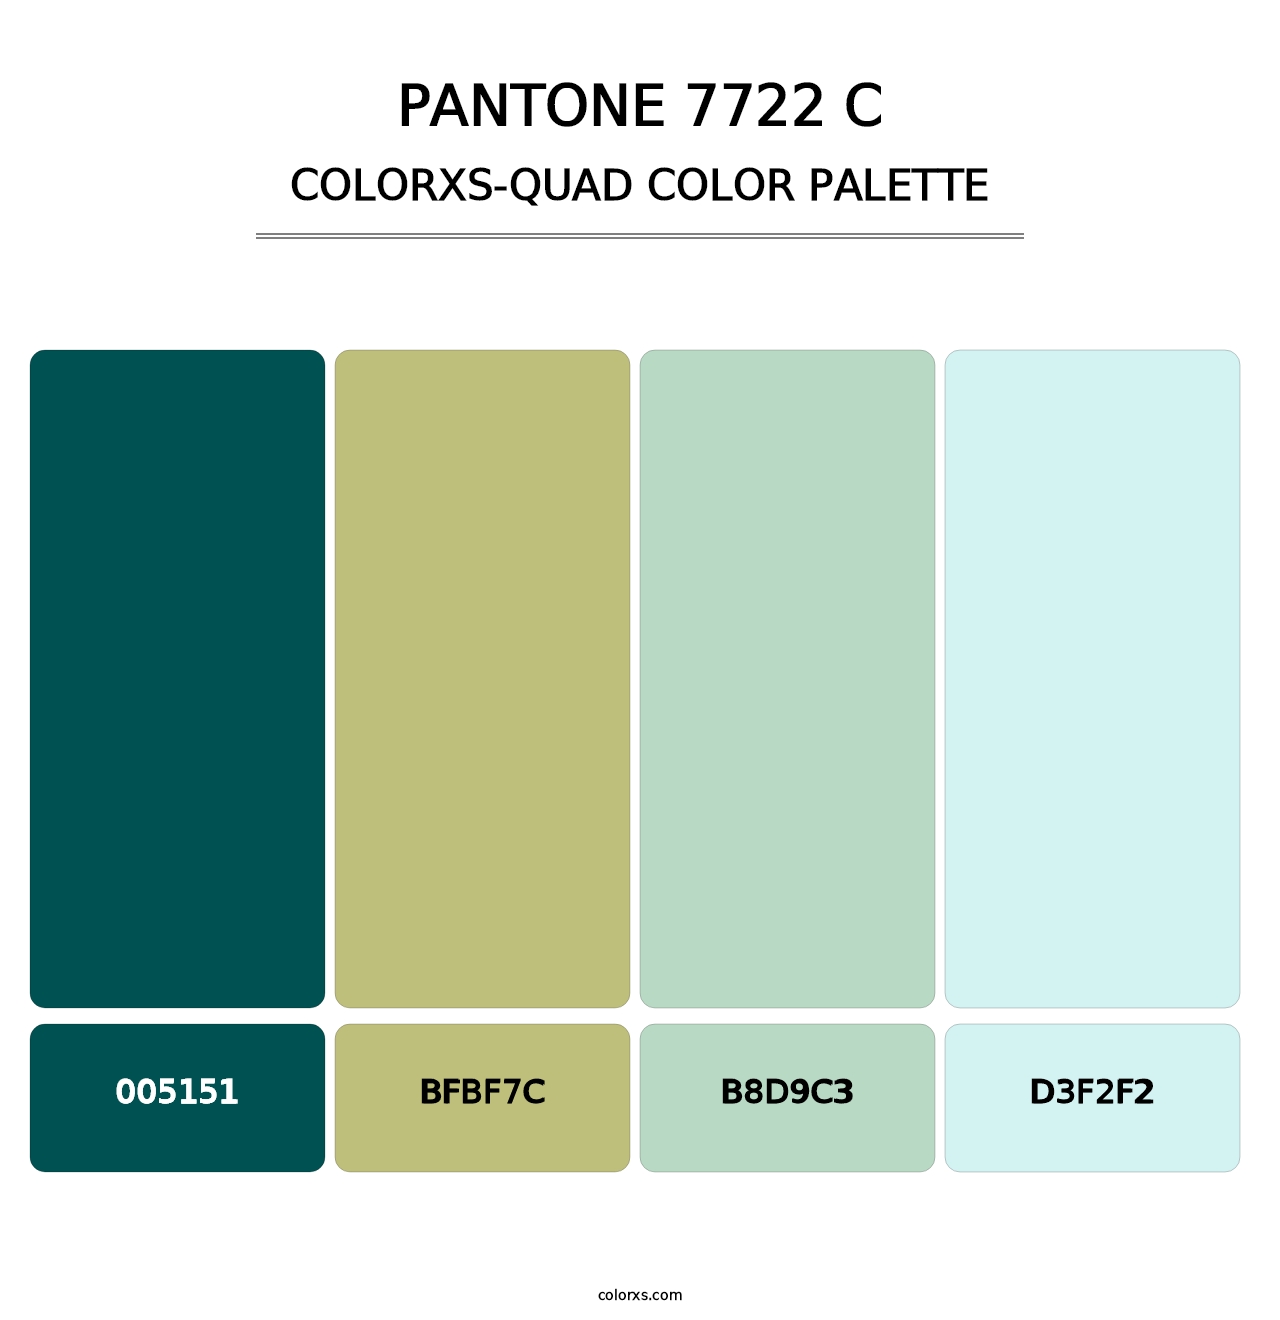 PANTONE 7722 C - Colorxs Quad Palette